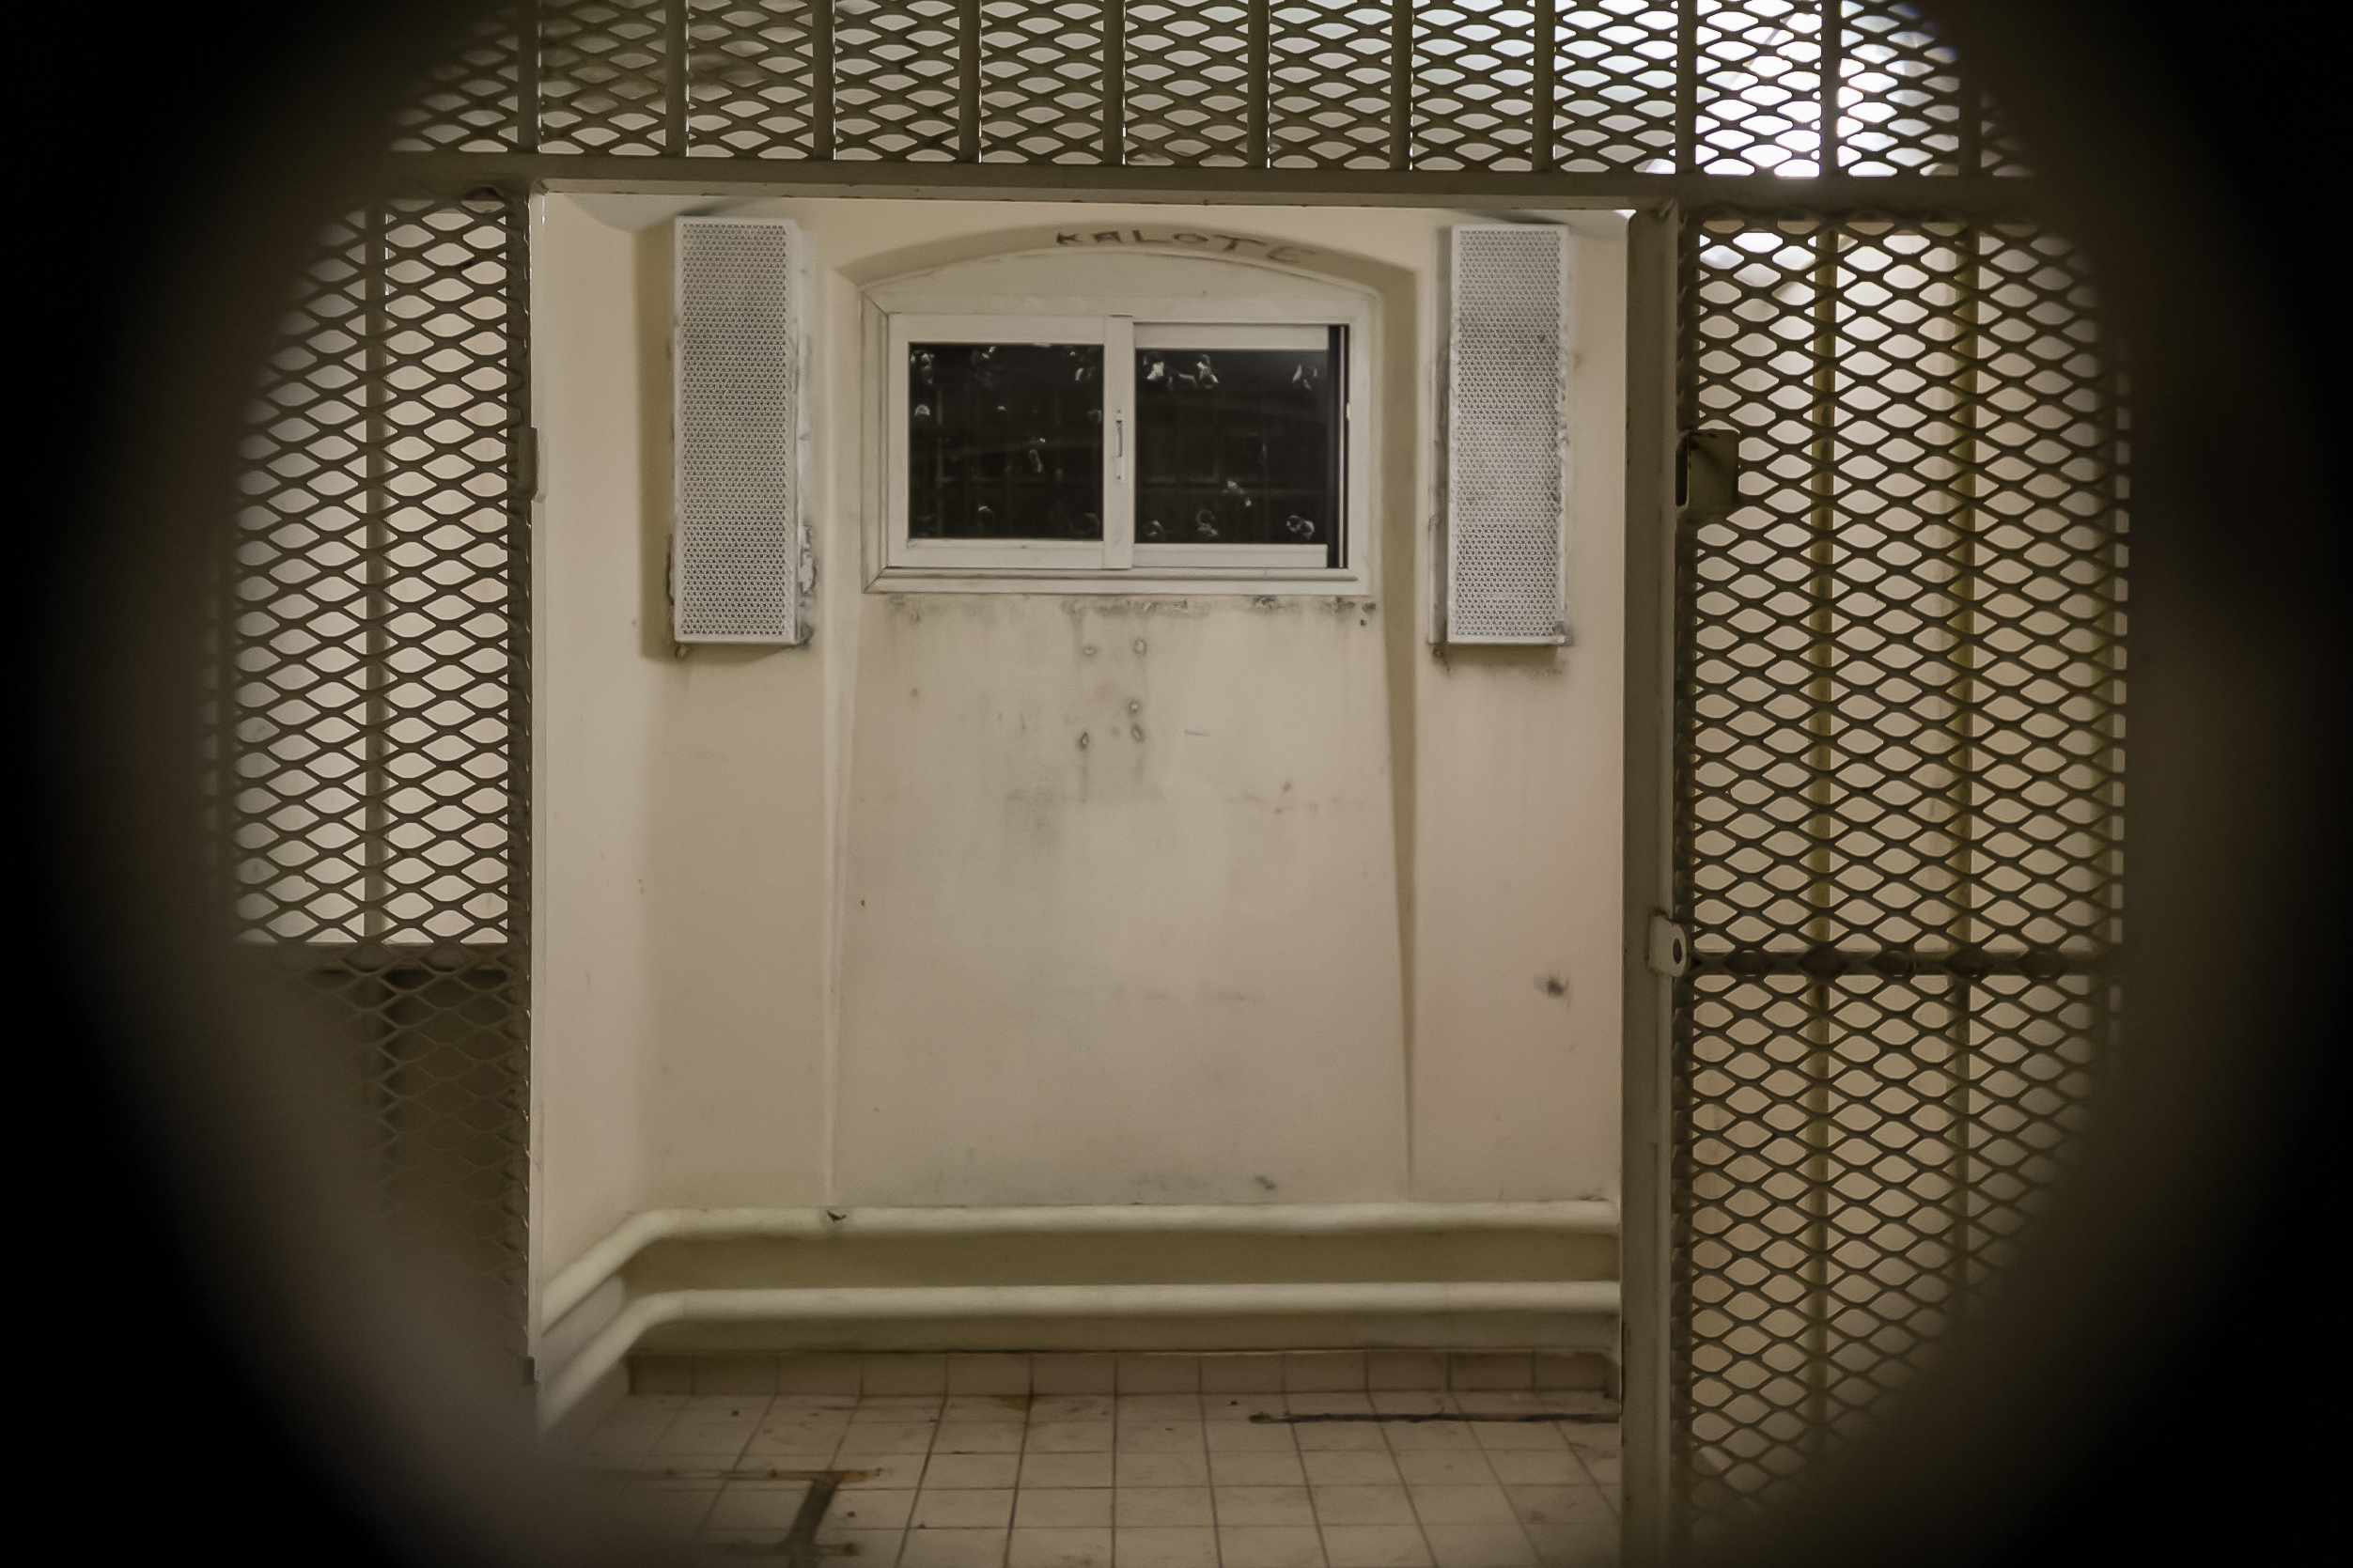 En prison, le quartier disciplinaire pose question